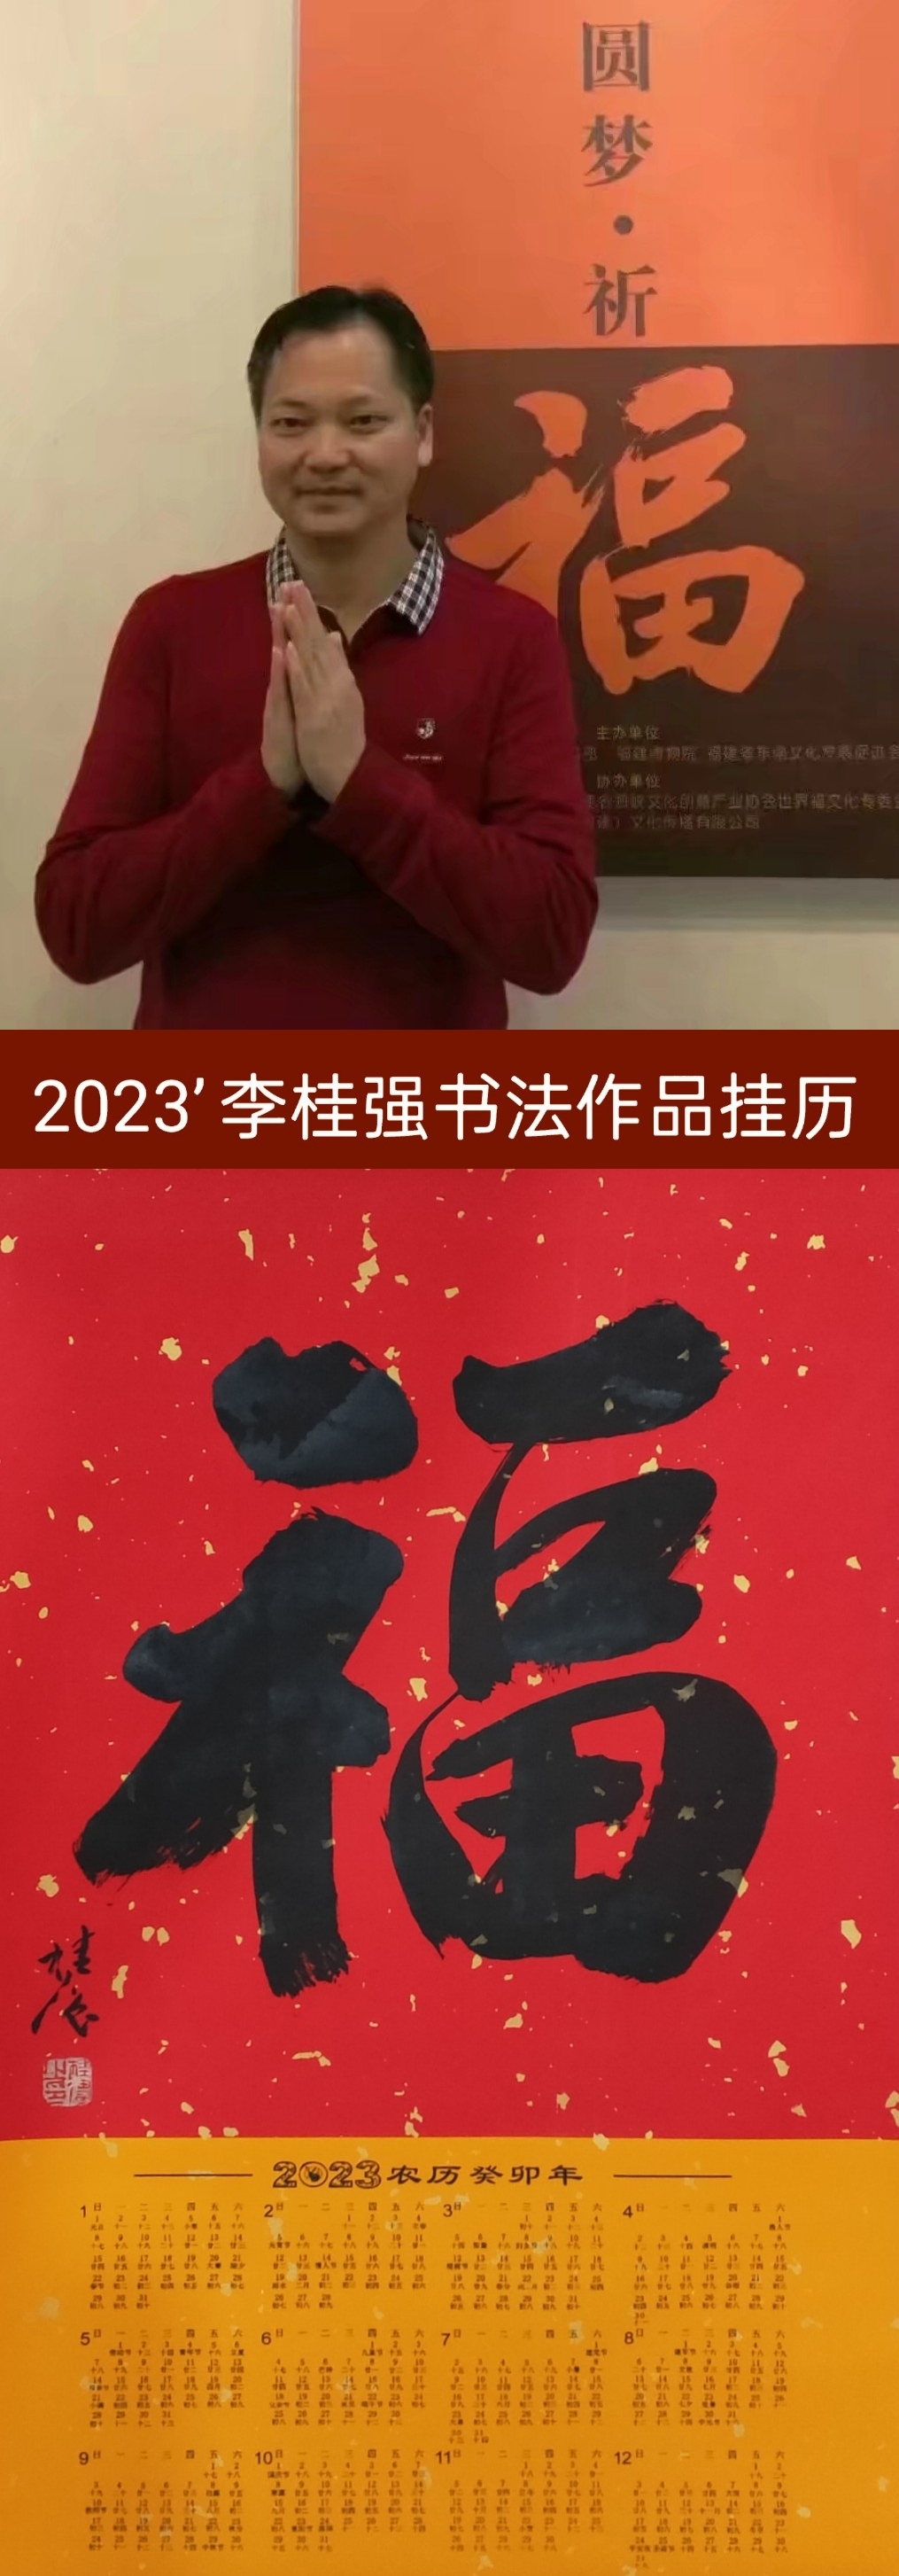 凝瑞集祥翰墨迎春~2023年李桂强手写书法挂历作品欣赏